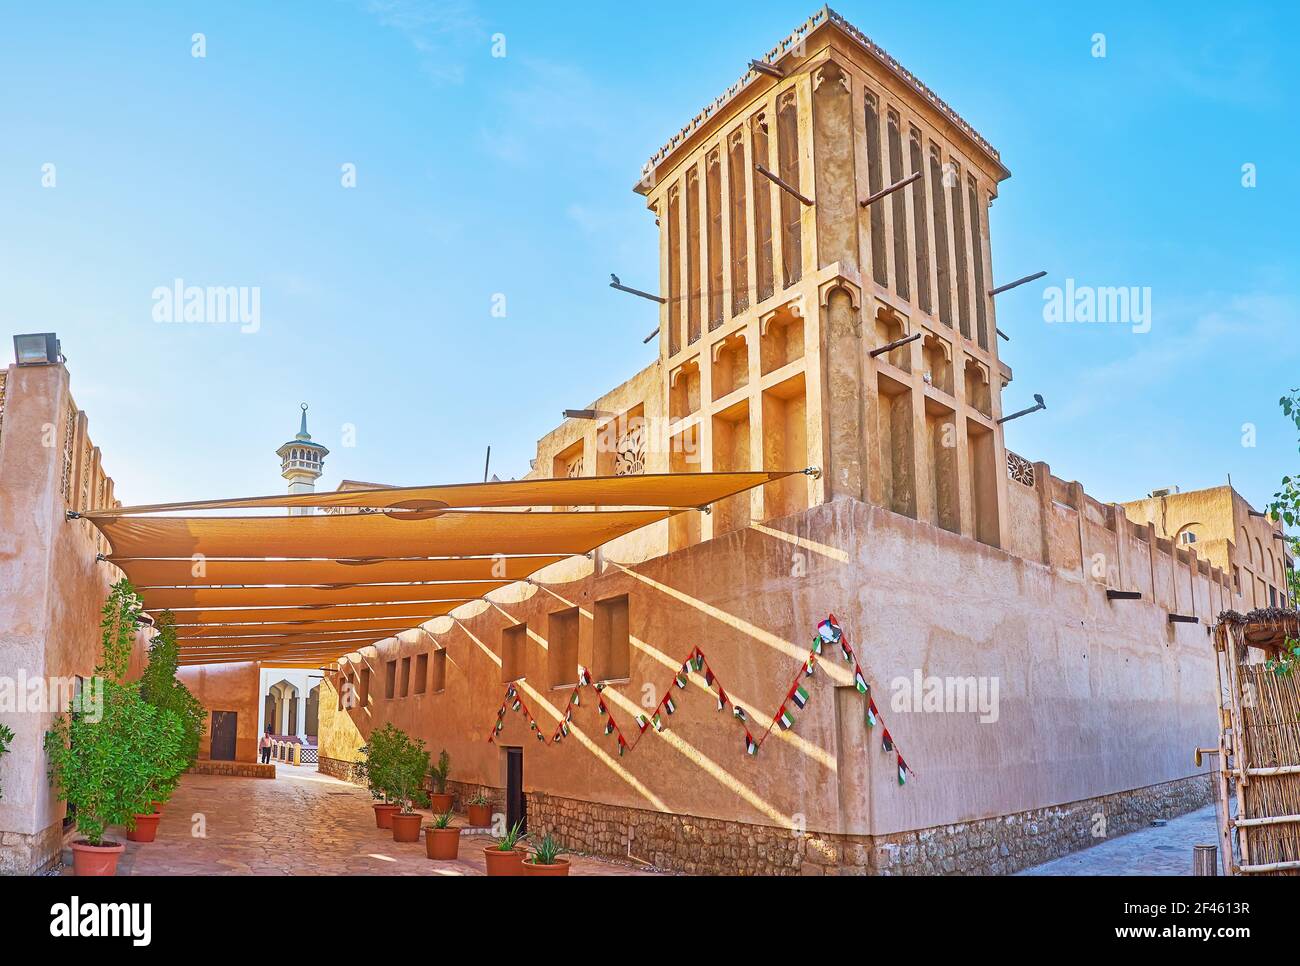 Il tradizionale palazzo in adobe con il paravento barjeel e le mura adoiche, appartiene al Dipartimento del Patrimonio architettonico e delle Antichità, al Fahidi, Foto Stock